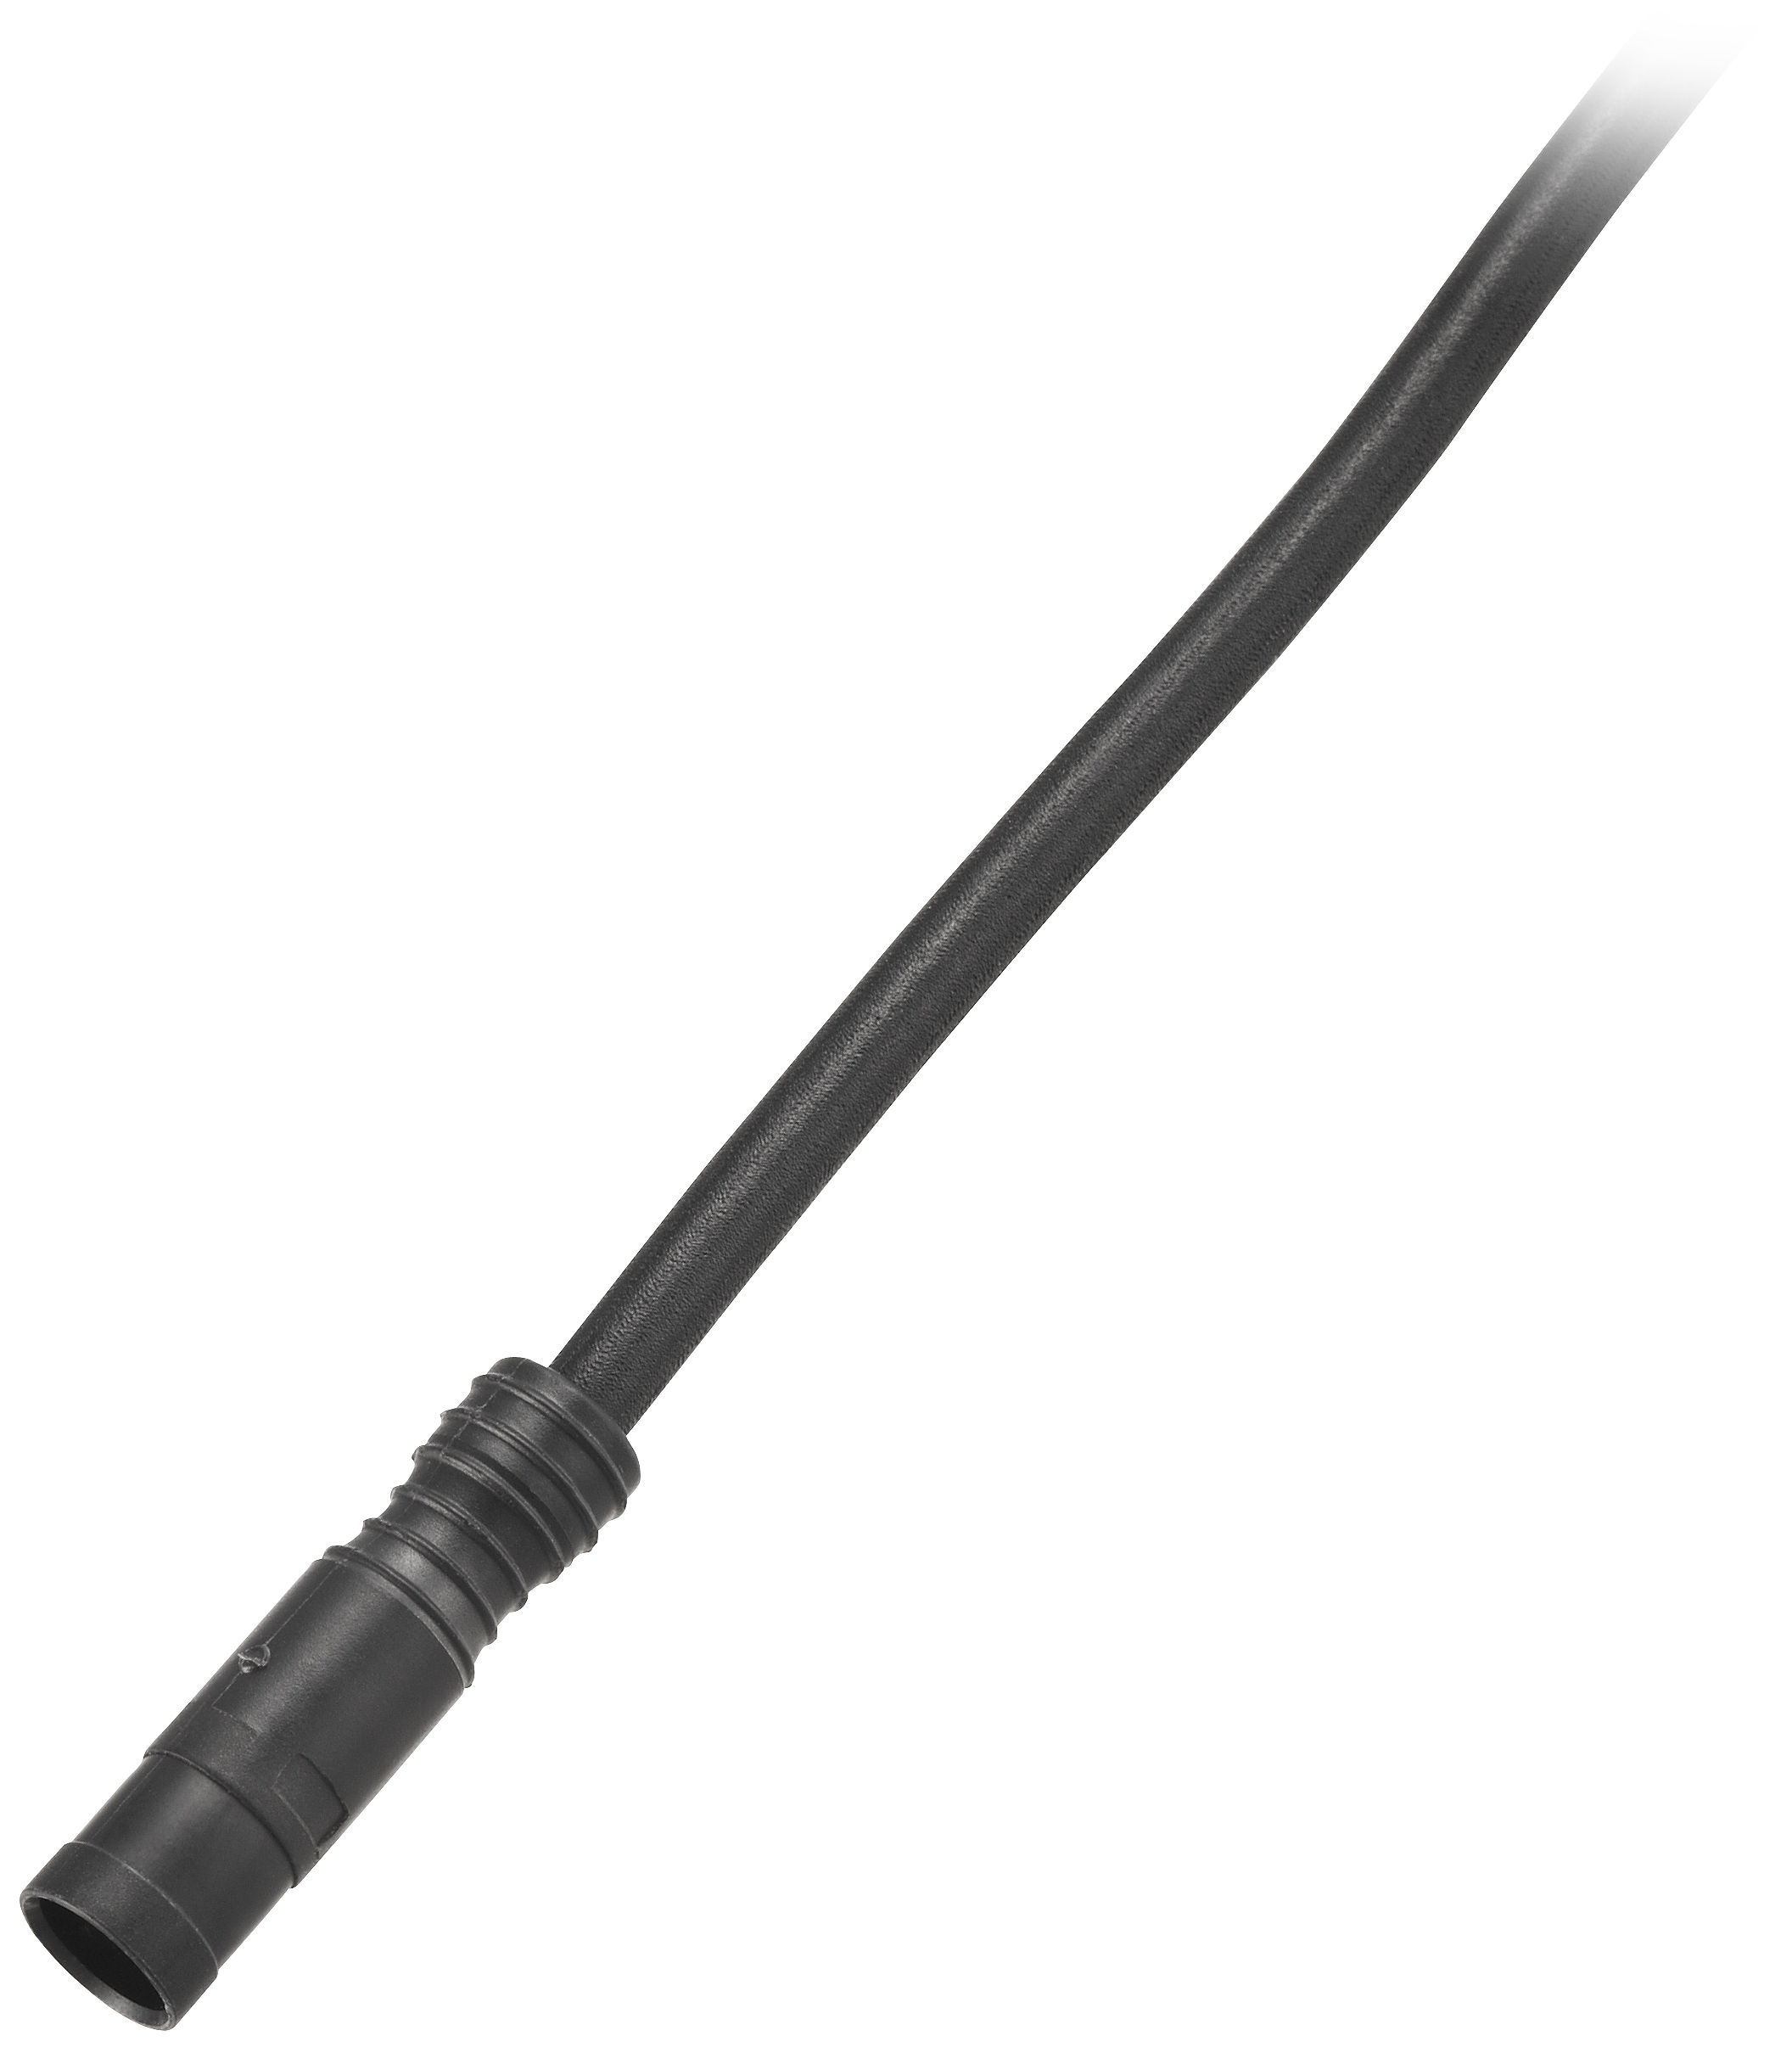 Shimano elektrický kabel EW-SD50 pro ULTEGRA DI2 STEPS 900mm černý